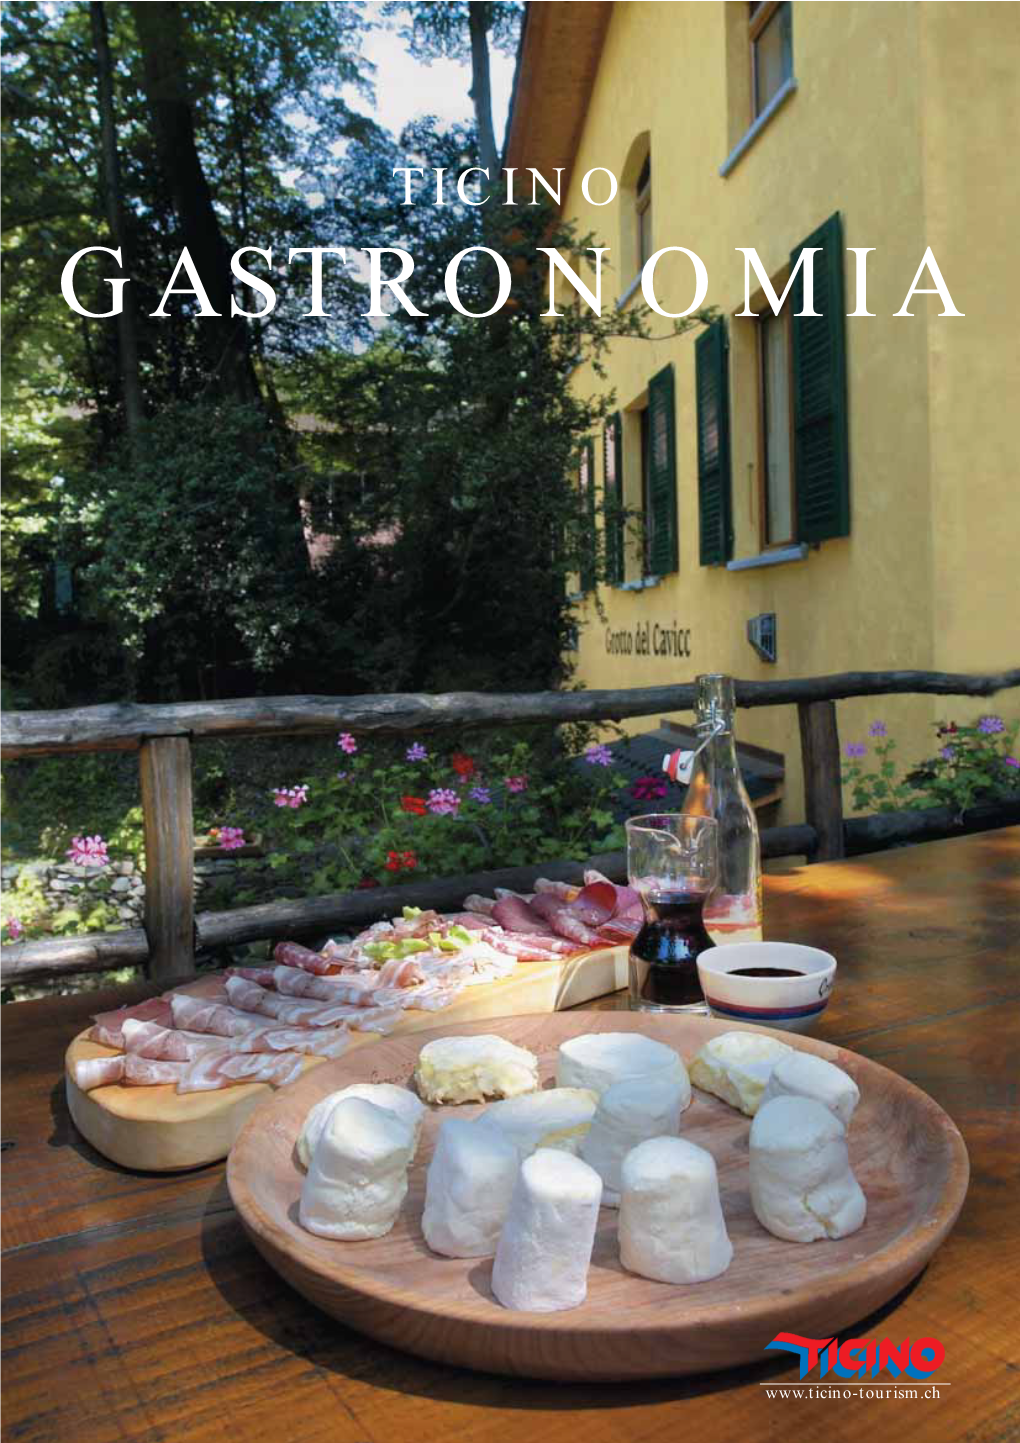 Ticino Gastronomia (PDF)